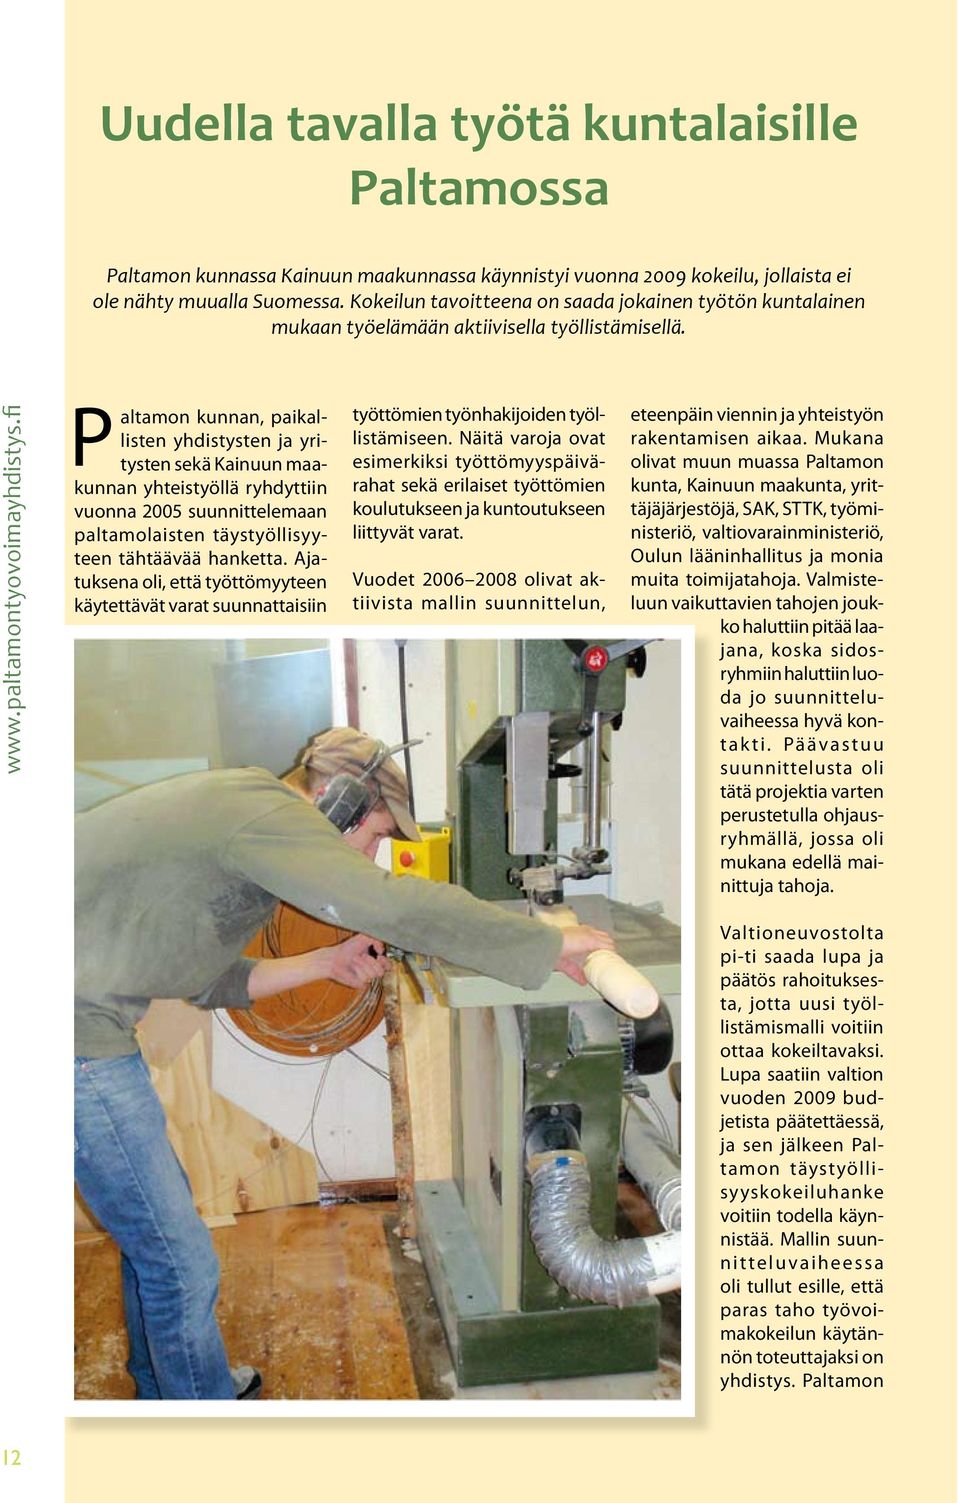 fi Paltamon kunnan, paikallisten yhdistysten ja yritysten sekä Kainuun maakunnan yhteistyöllä ryhdyttiin vuonna 2005 suunnittelemaan paltamolaisten täystyöllisyyteen tähtäävää hanketta.